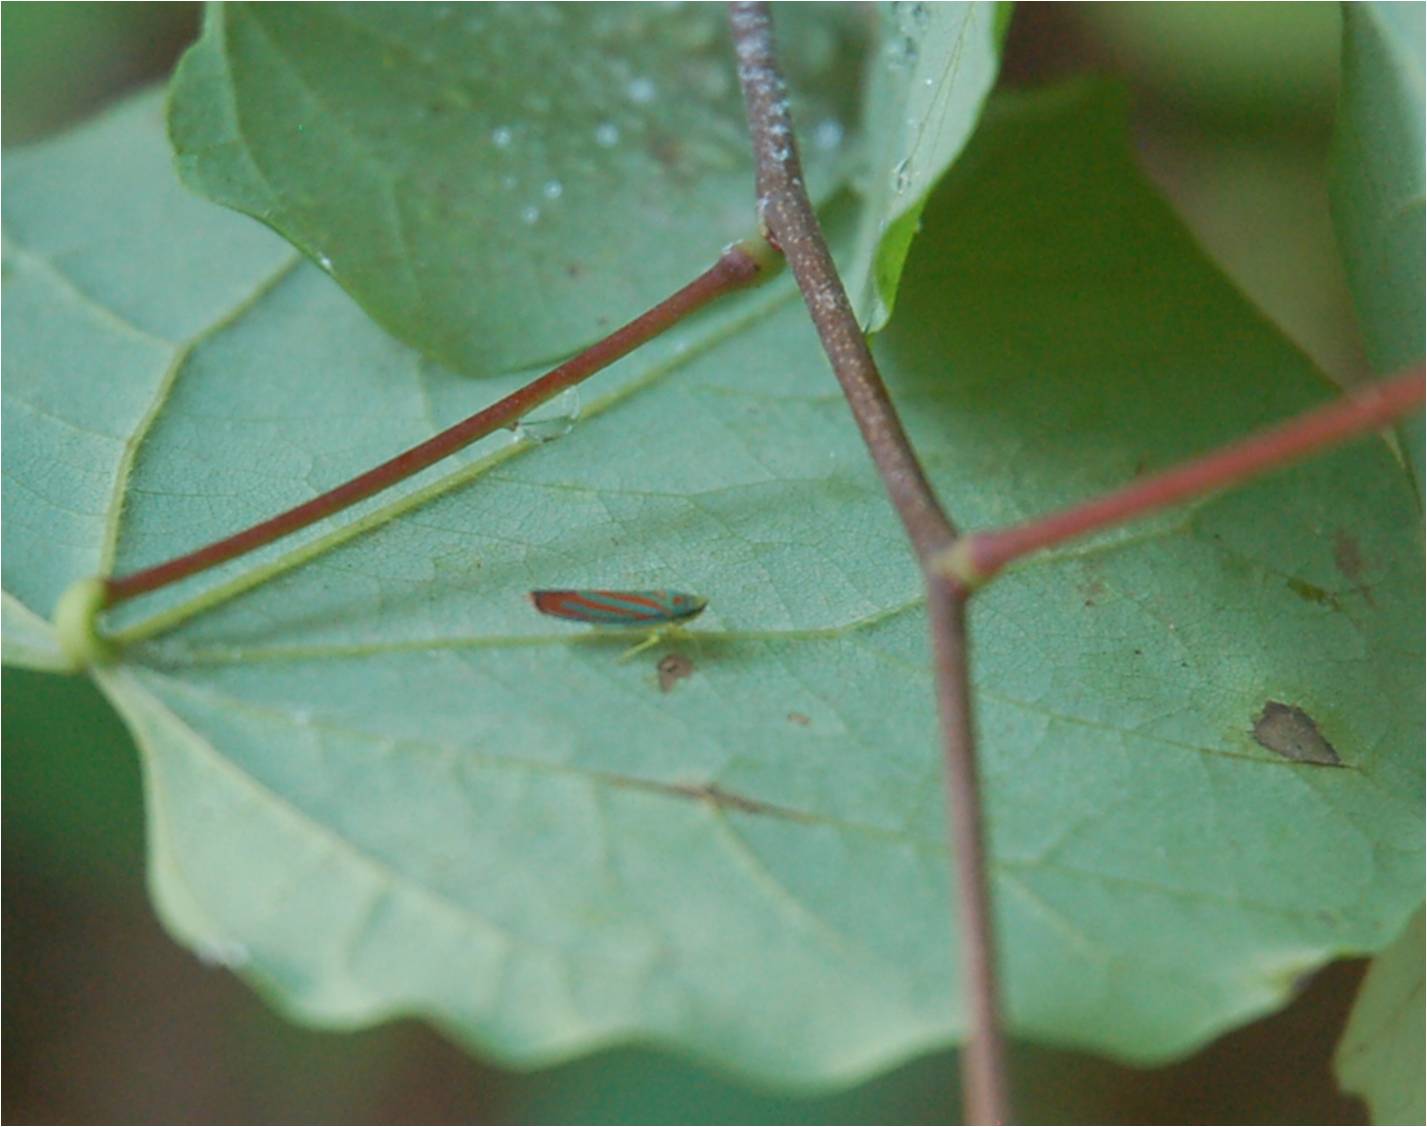 red-banded leaf hopper on Redbud (Cercis canadensis) at ECWA's Glennstone preserve